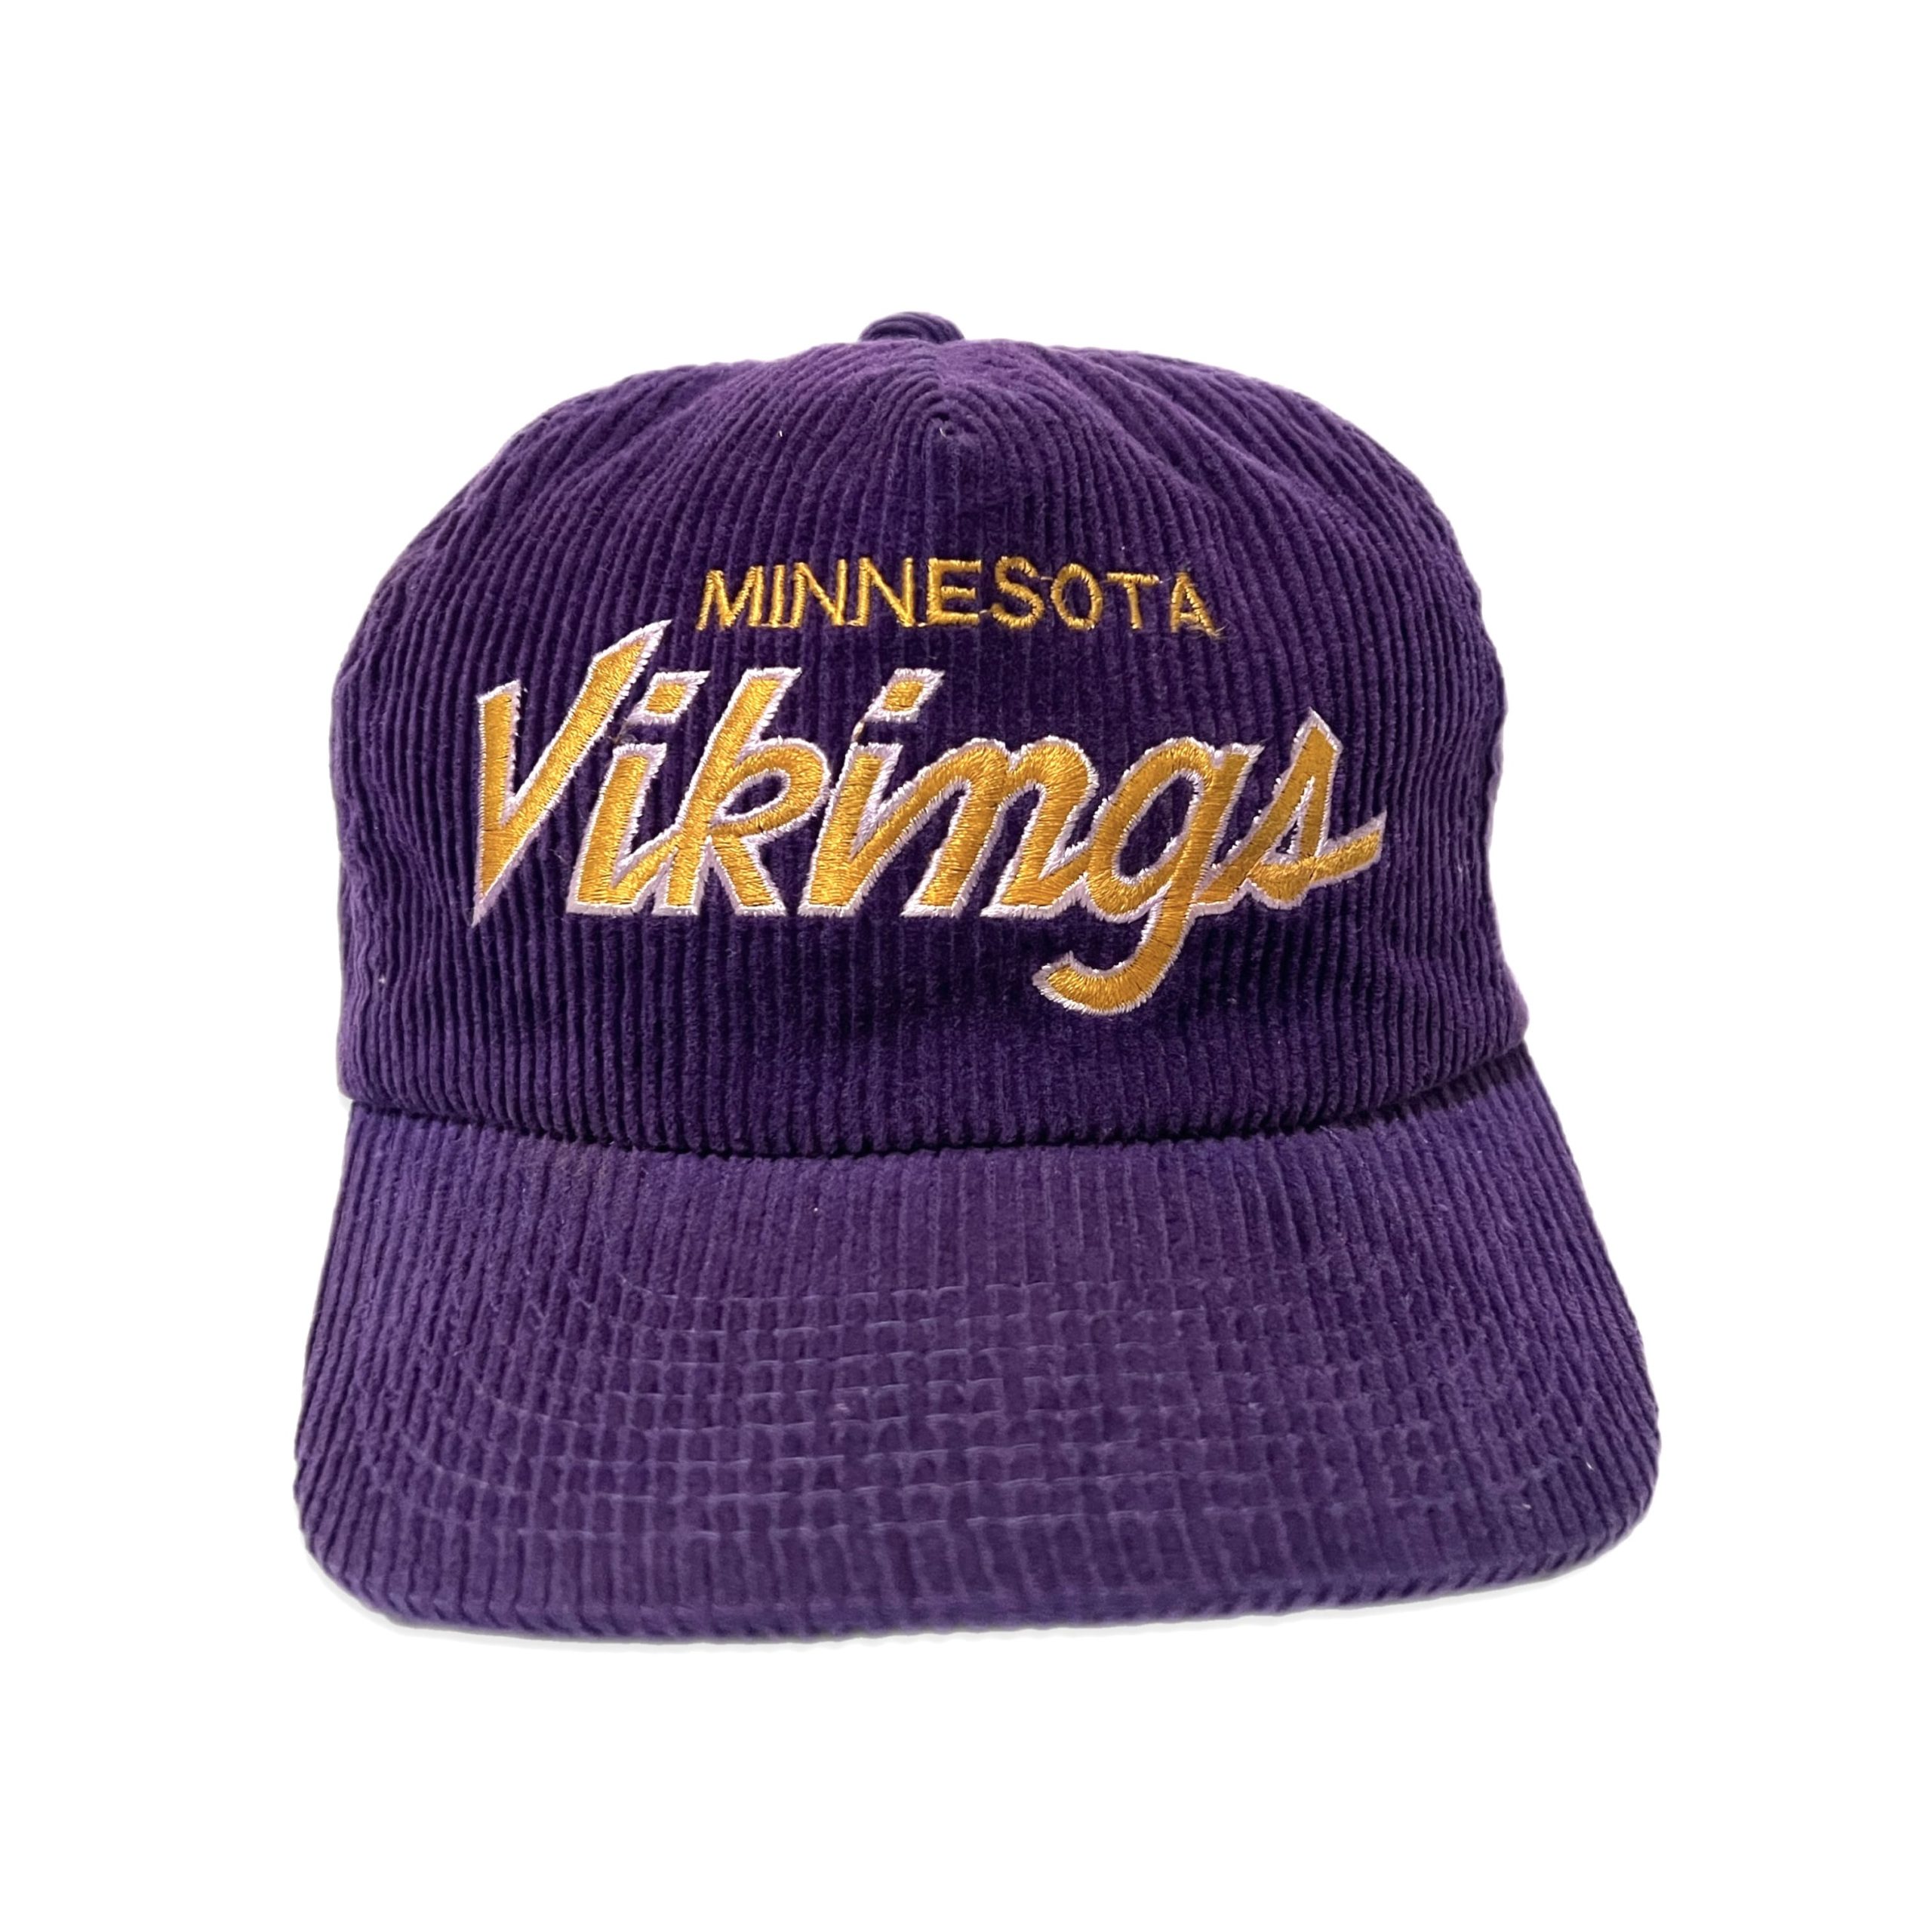 vikings hats